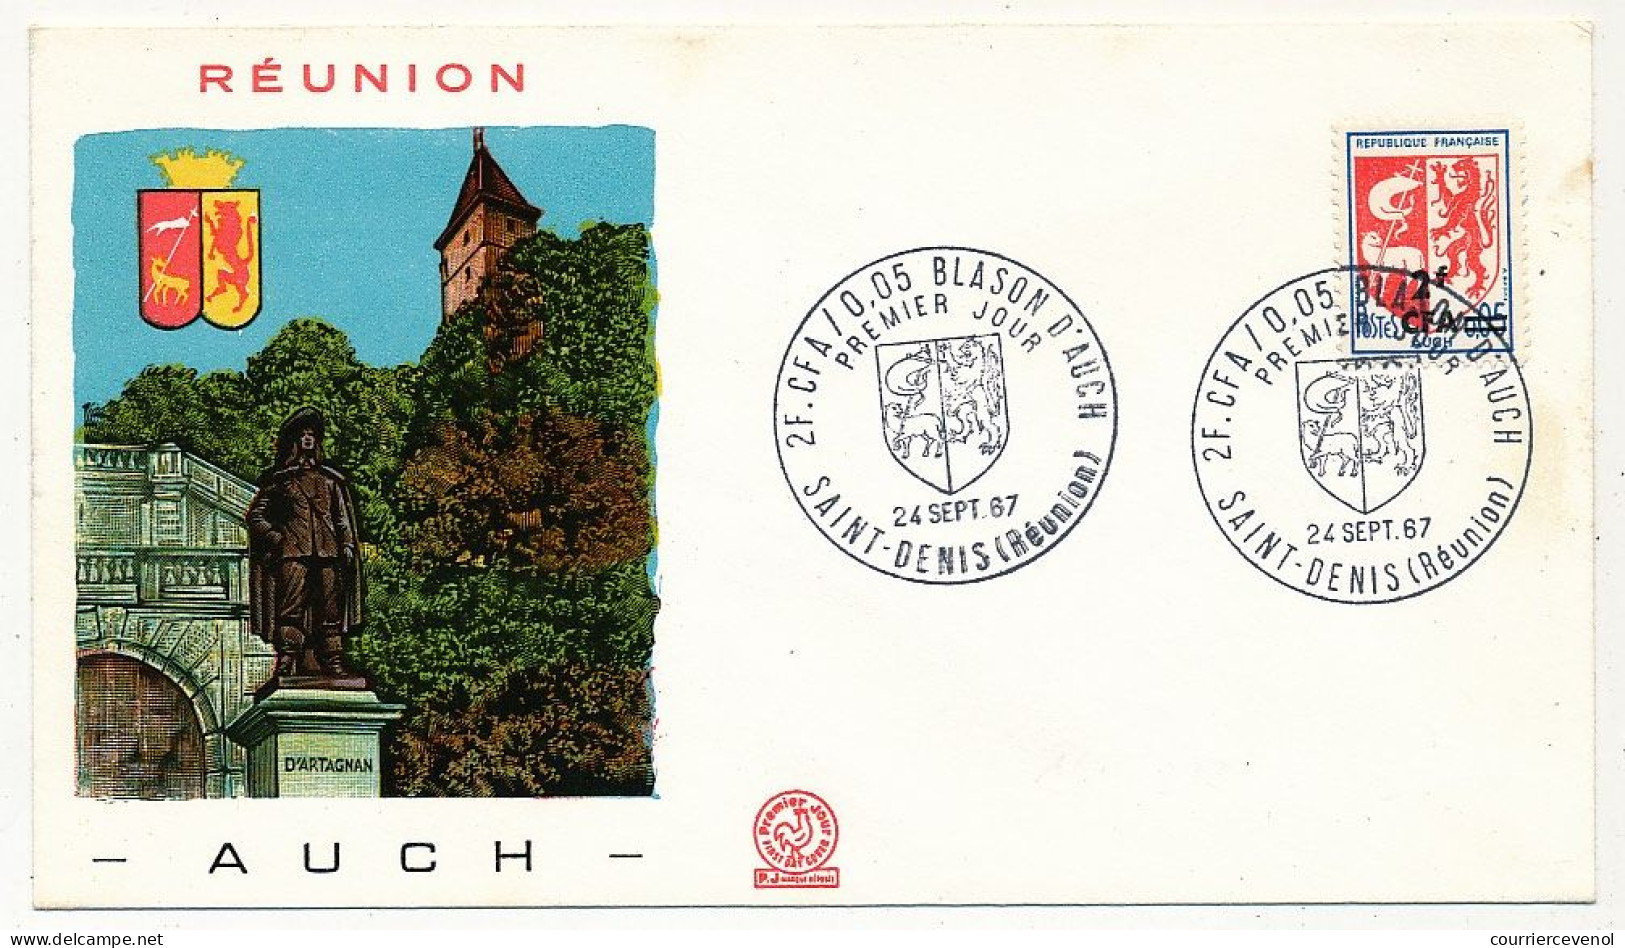 REUNION - Enveloppe FDC - 2F Blason D'Auch - Premier Jour - St Denis (Réunion) 24/12/1967 - Briefe U. Dokumente